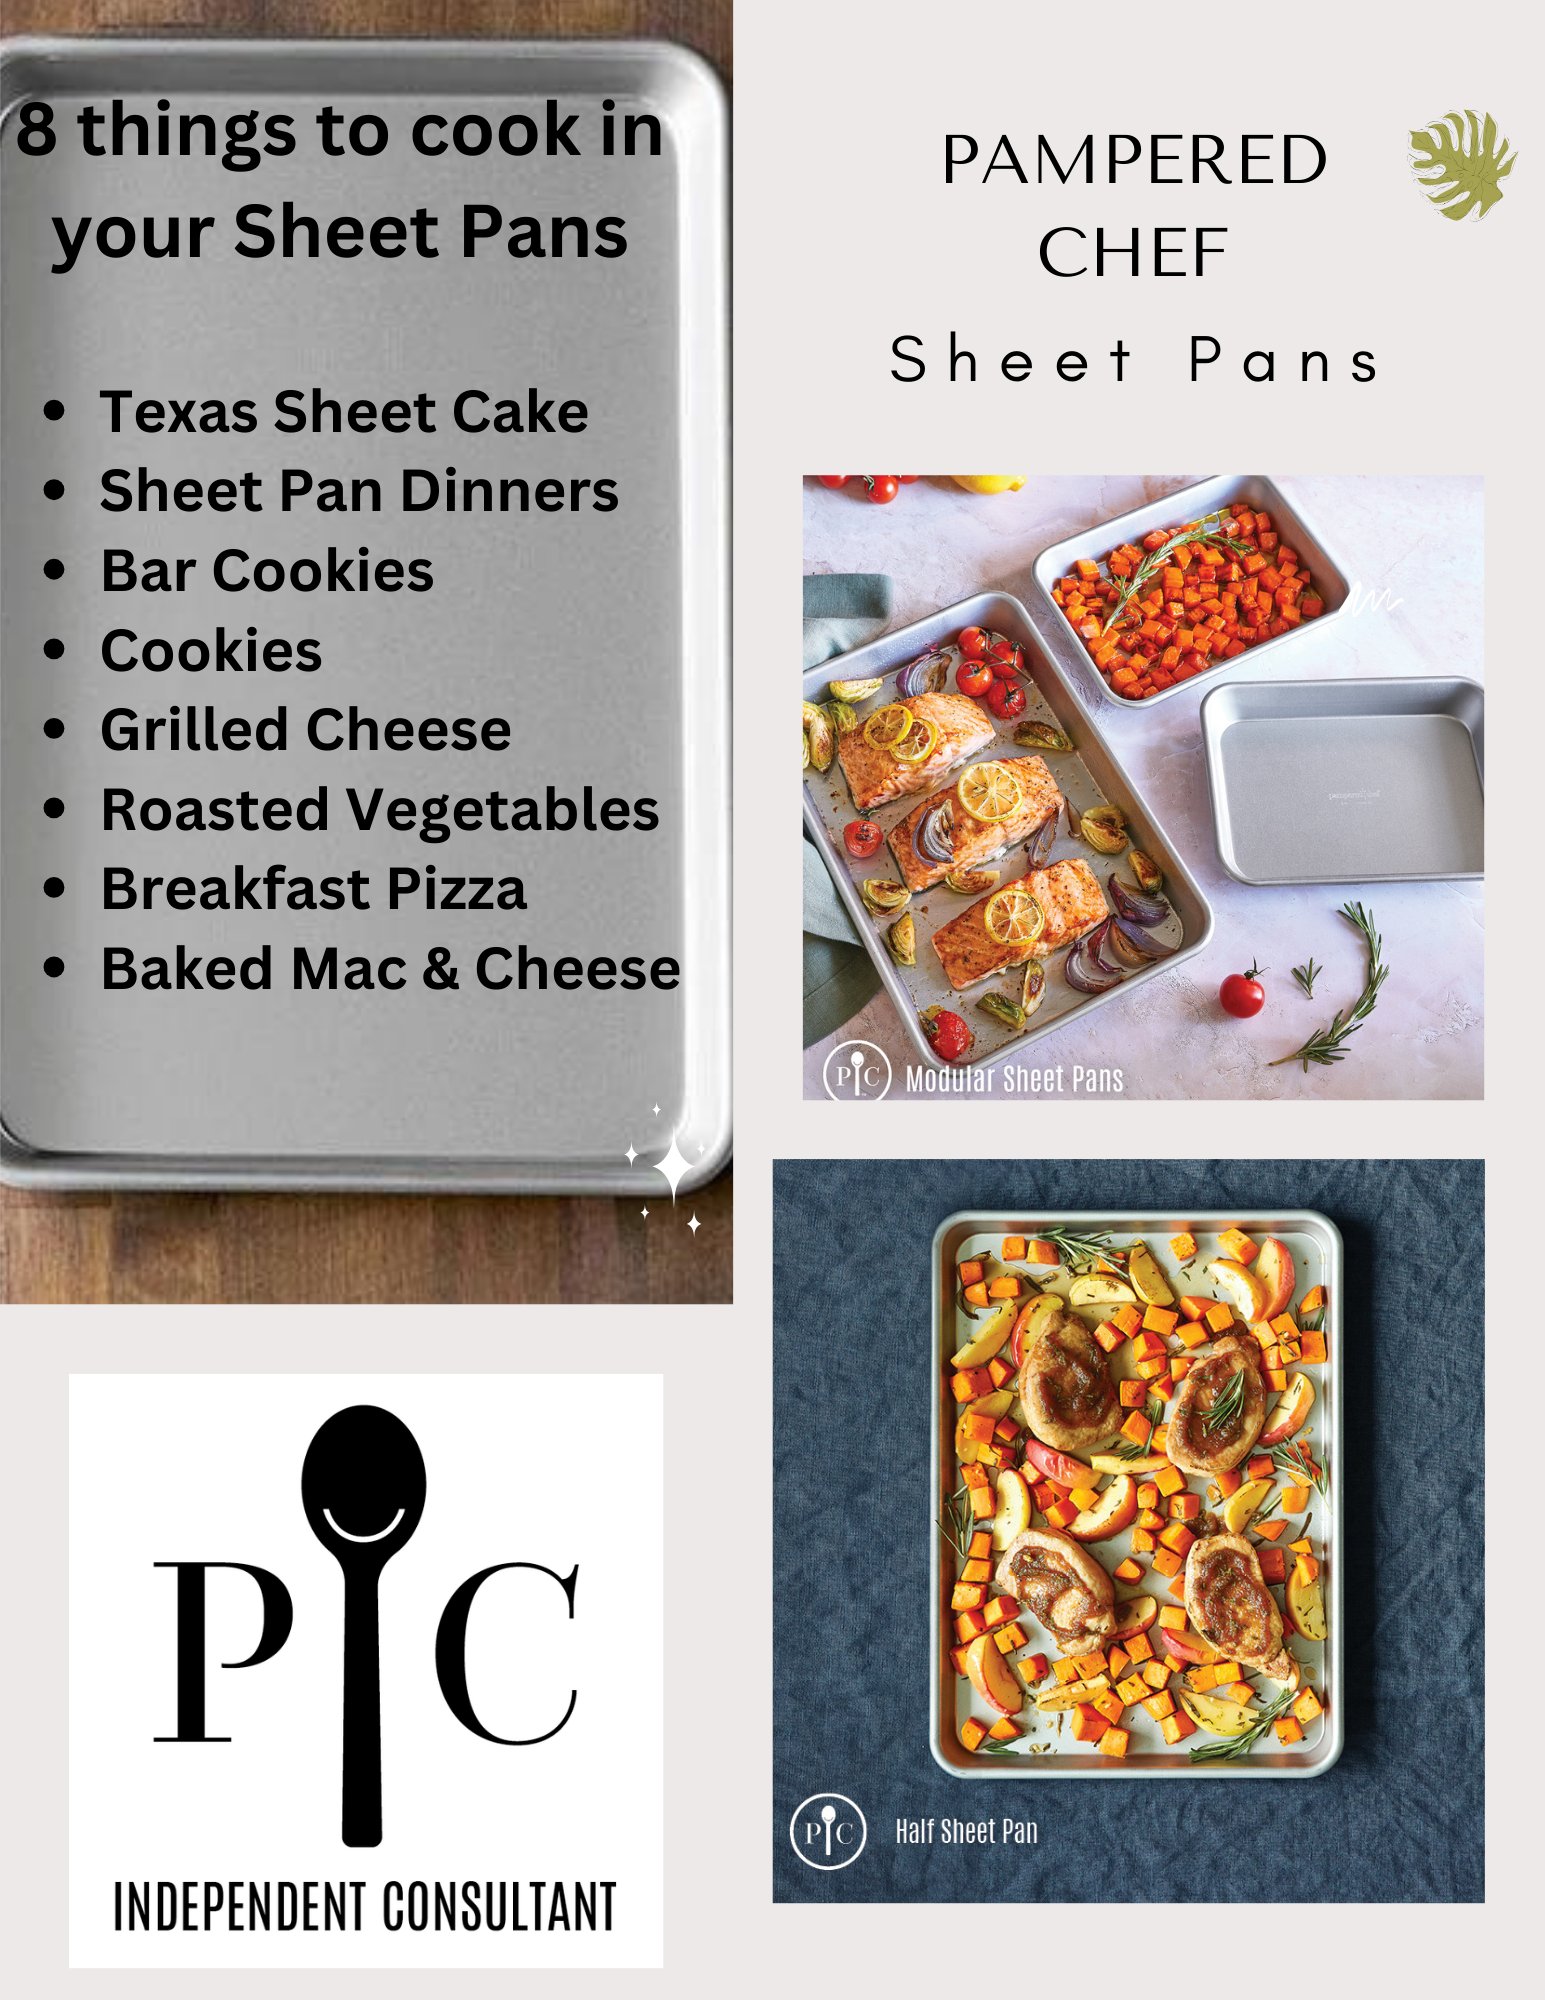 Modular Sheet Pans